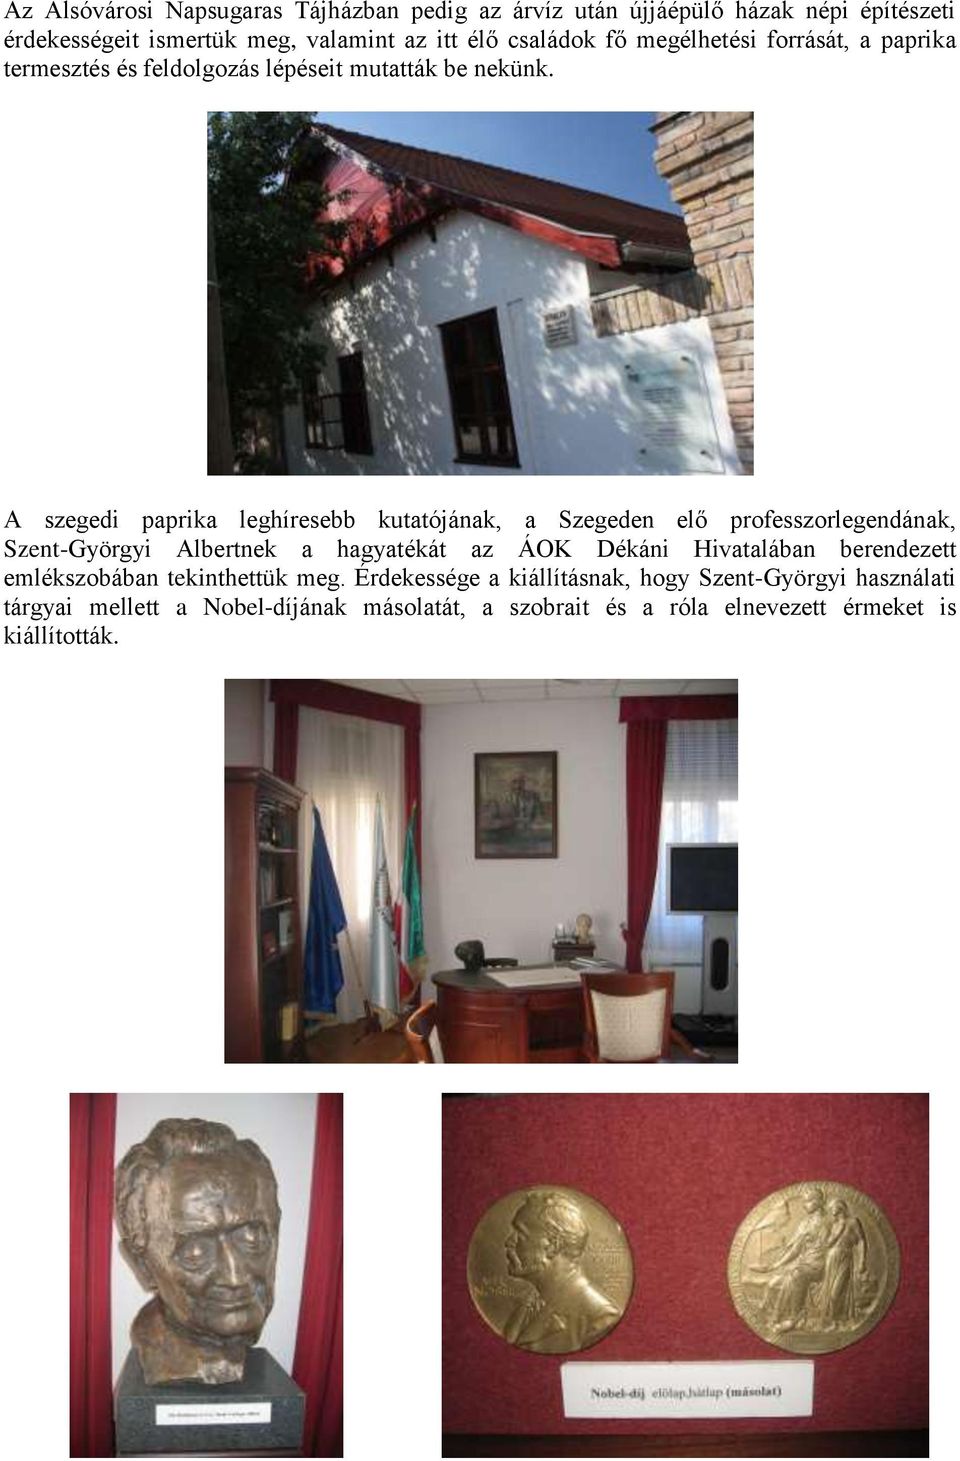 A szegedi paprika leghíresebb kutatójának, a Szegeden elő professzorlegendának, Szent-Györgyi Albertnek a hagyatékát az ÁOK Dékáni Hivatalában